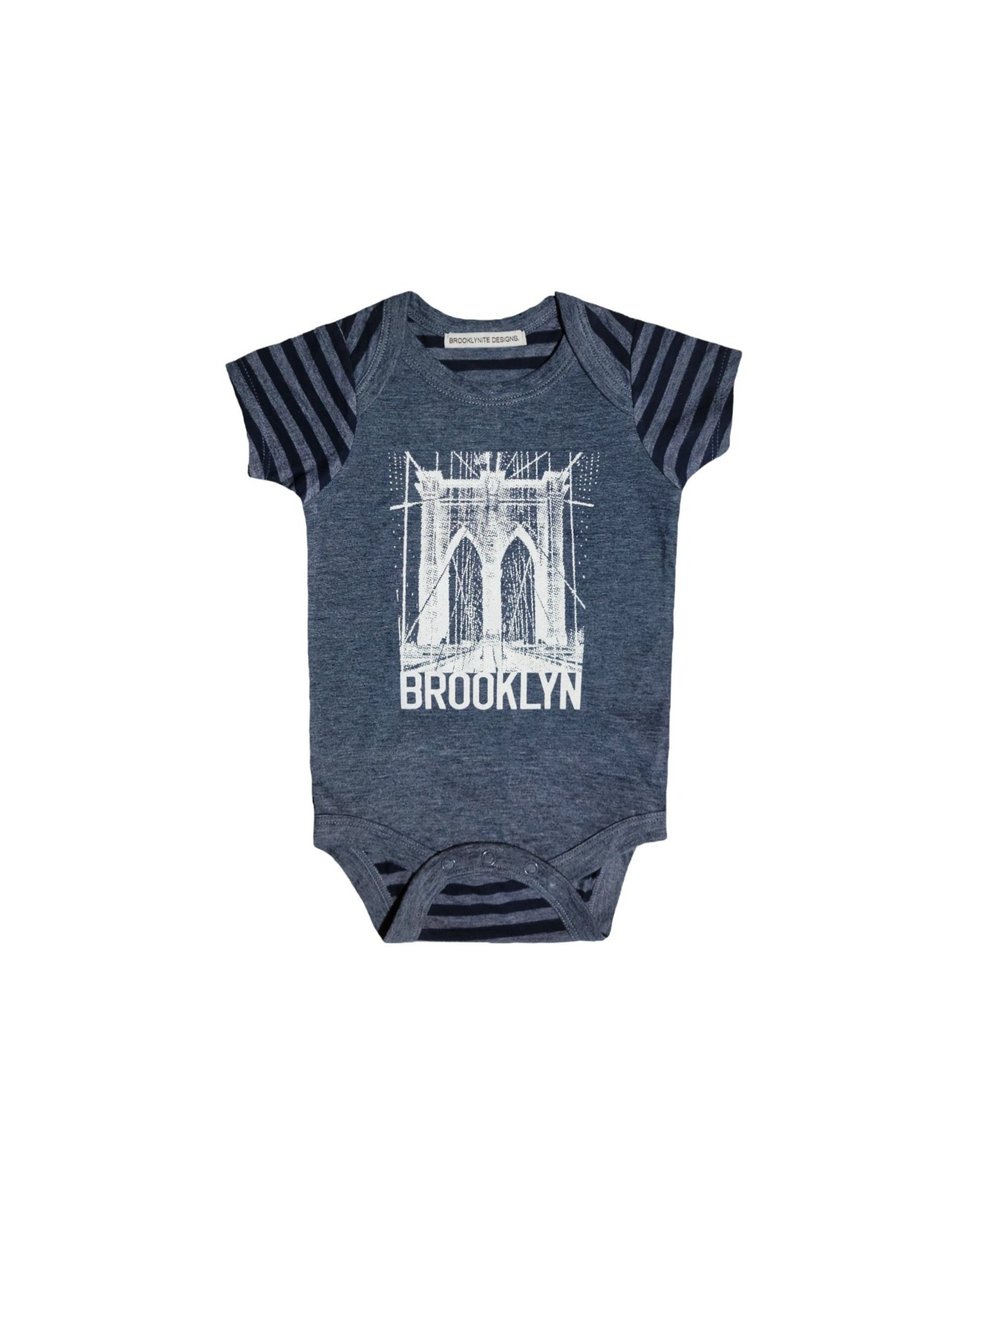 Baby Brooklyn bodysuit — brooklynite designs.